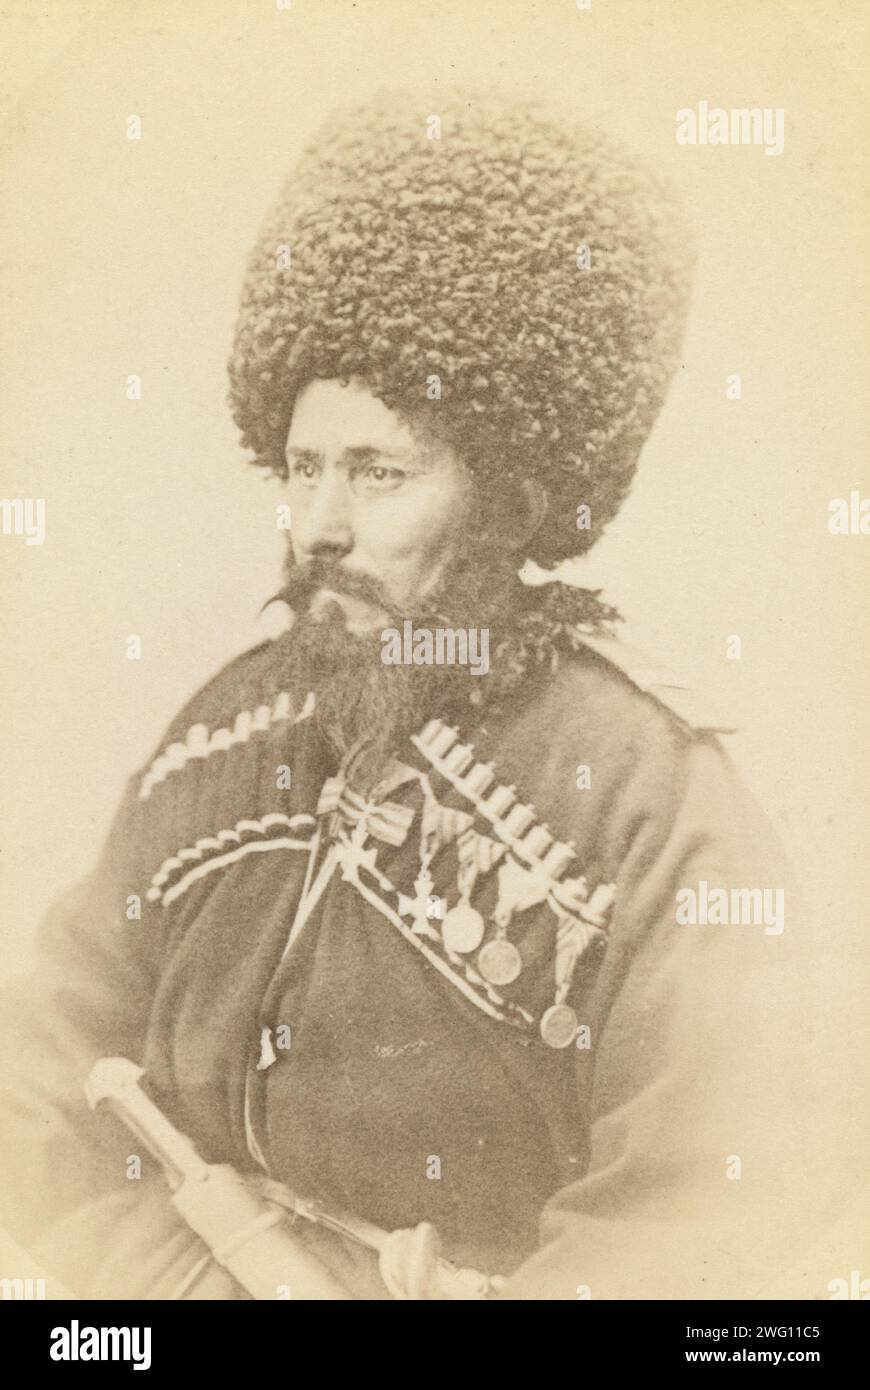 Halblanges Porträt des Daghestani-Mannes, nach links gerichtet, zwischen 1870 und 1886. Halblanges Porträt eines Bergsteigers aus Daghestan, der nach links sitzt. Auf dem Verso steht: Bergsteiger Daghestan. Stockfoto